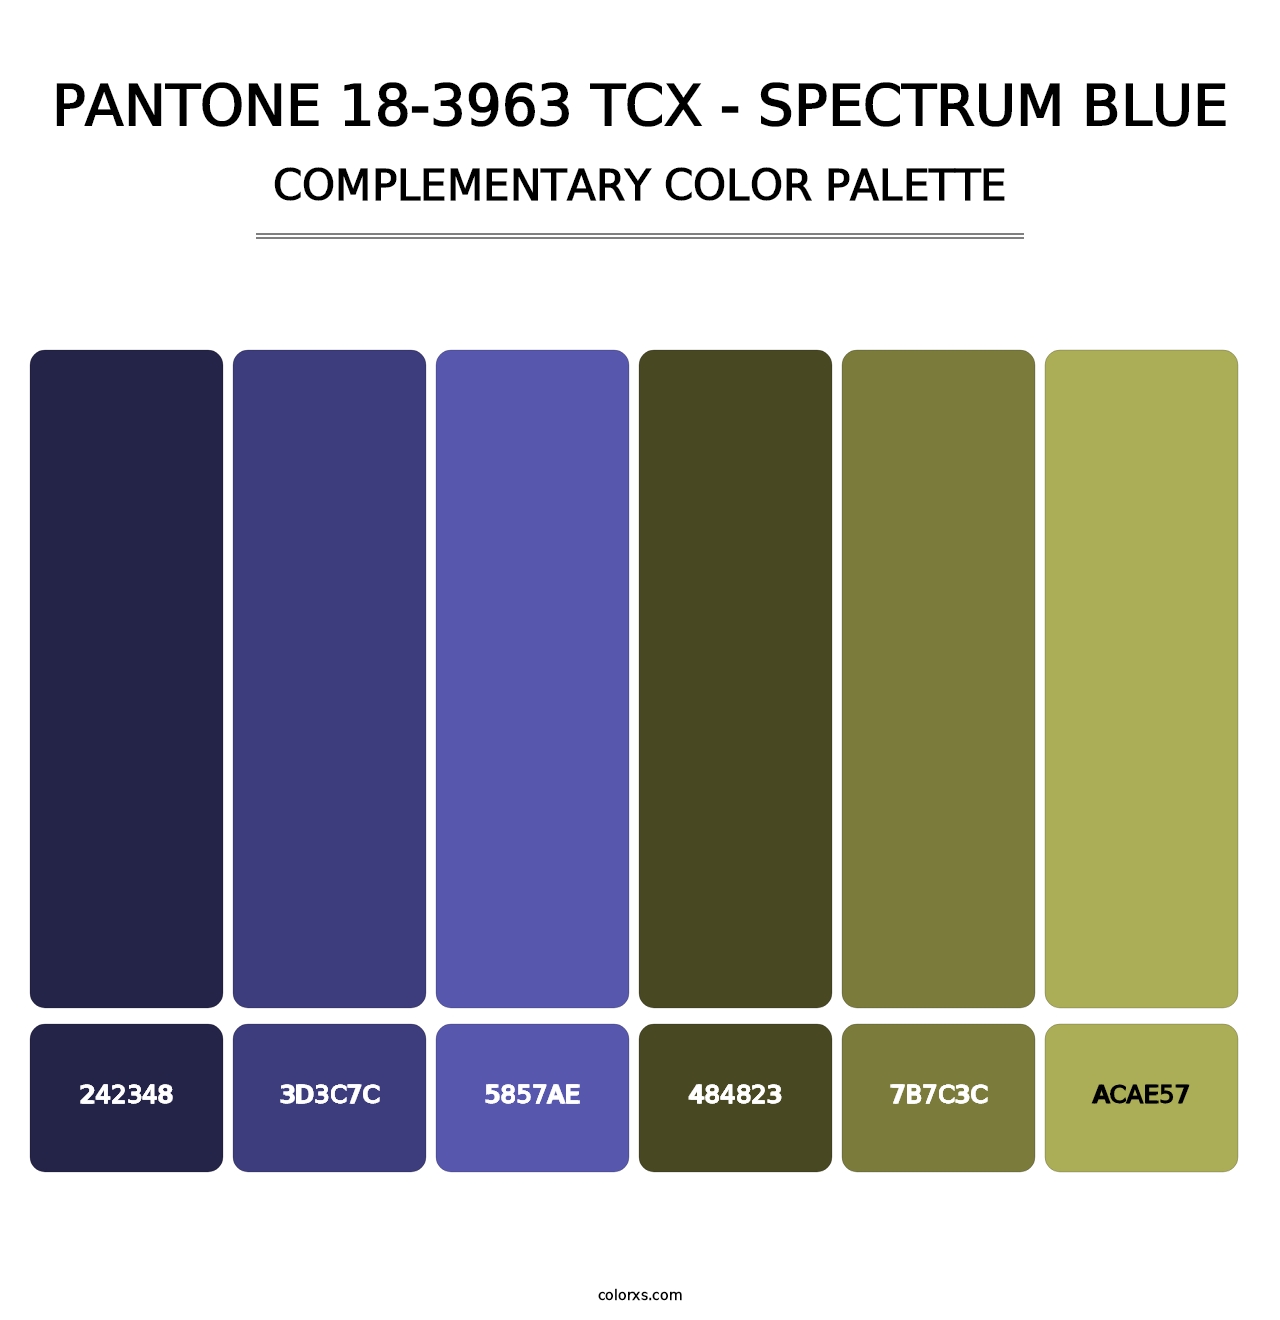 PANTONE 18-3963 TCX - Spectrum Blue - Complementary Color Palette